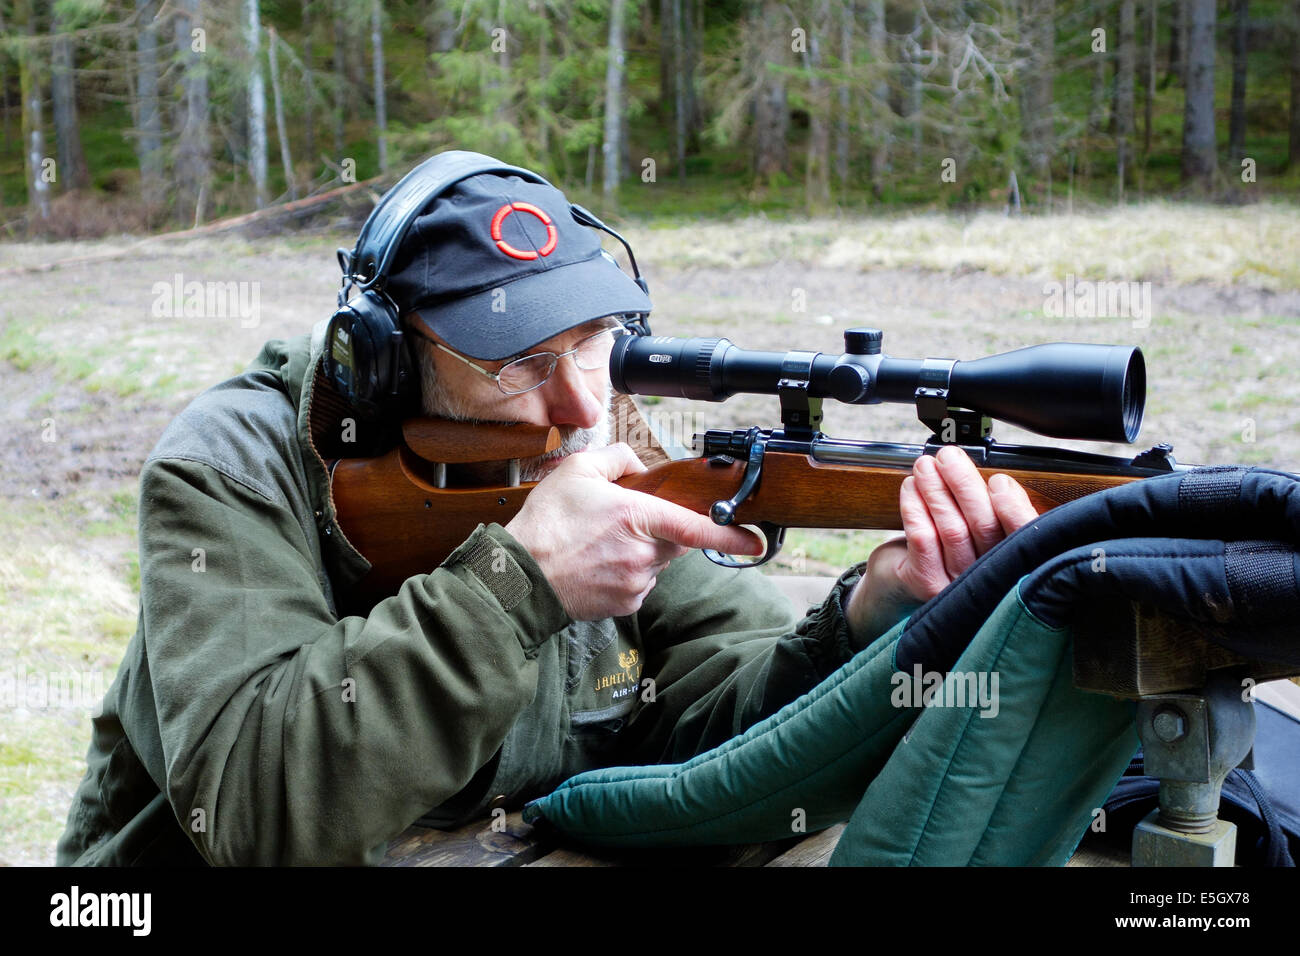 Ältere Jäger mit Jagdgewehr Mauser Aktion, ausgestattet mit einem Umfang soll ein Training Runden schießen. Stockfoto